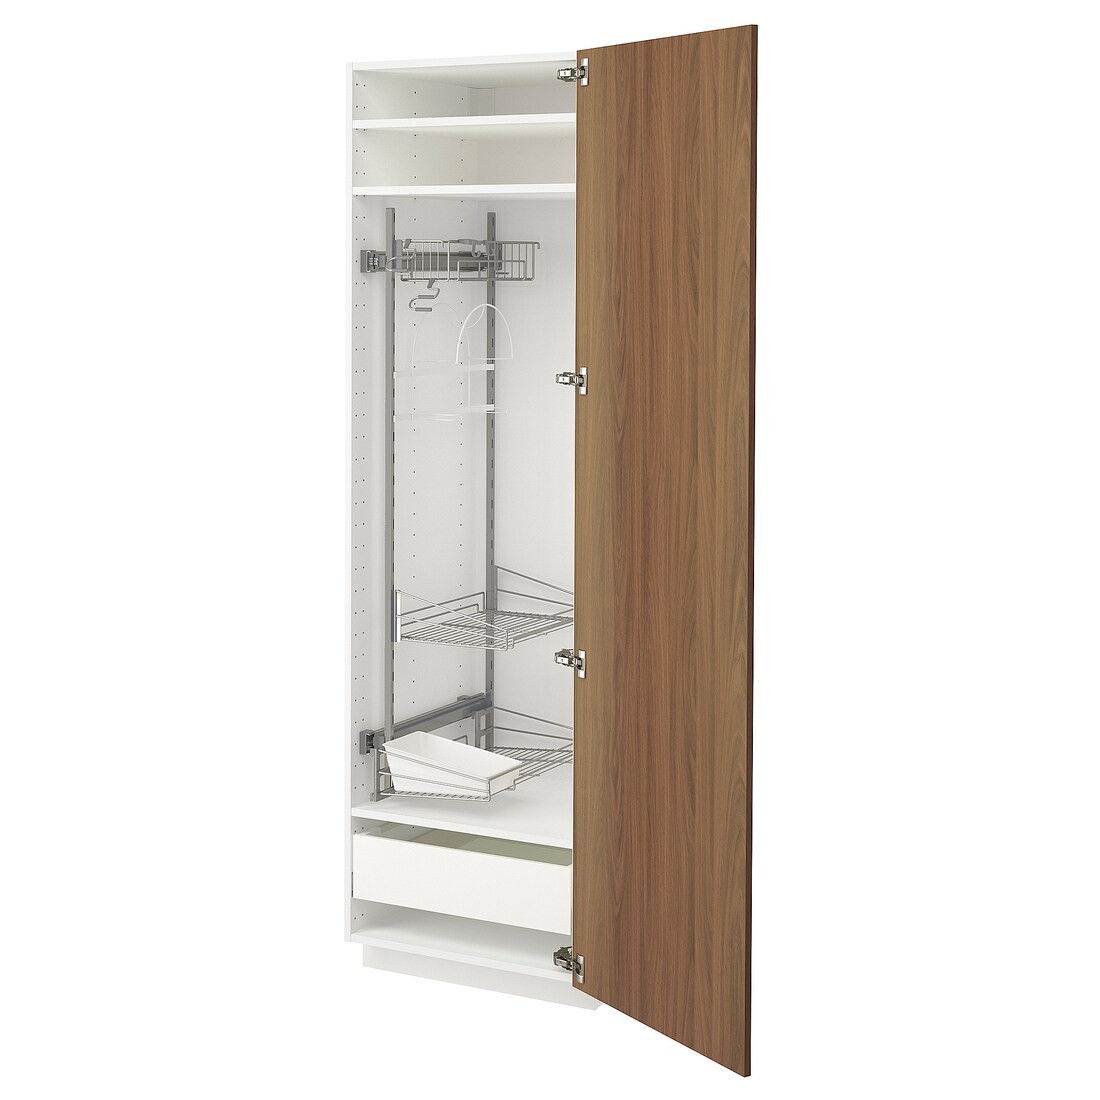 METOD / MAXIMERA Высокий шкаф с отделением для аксессуаров для уборки, белый / Имитация коричневого ореха, 60x60x200 см